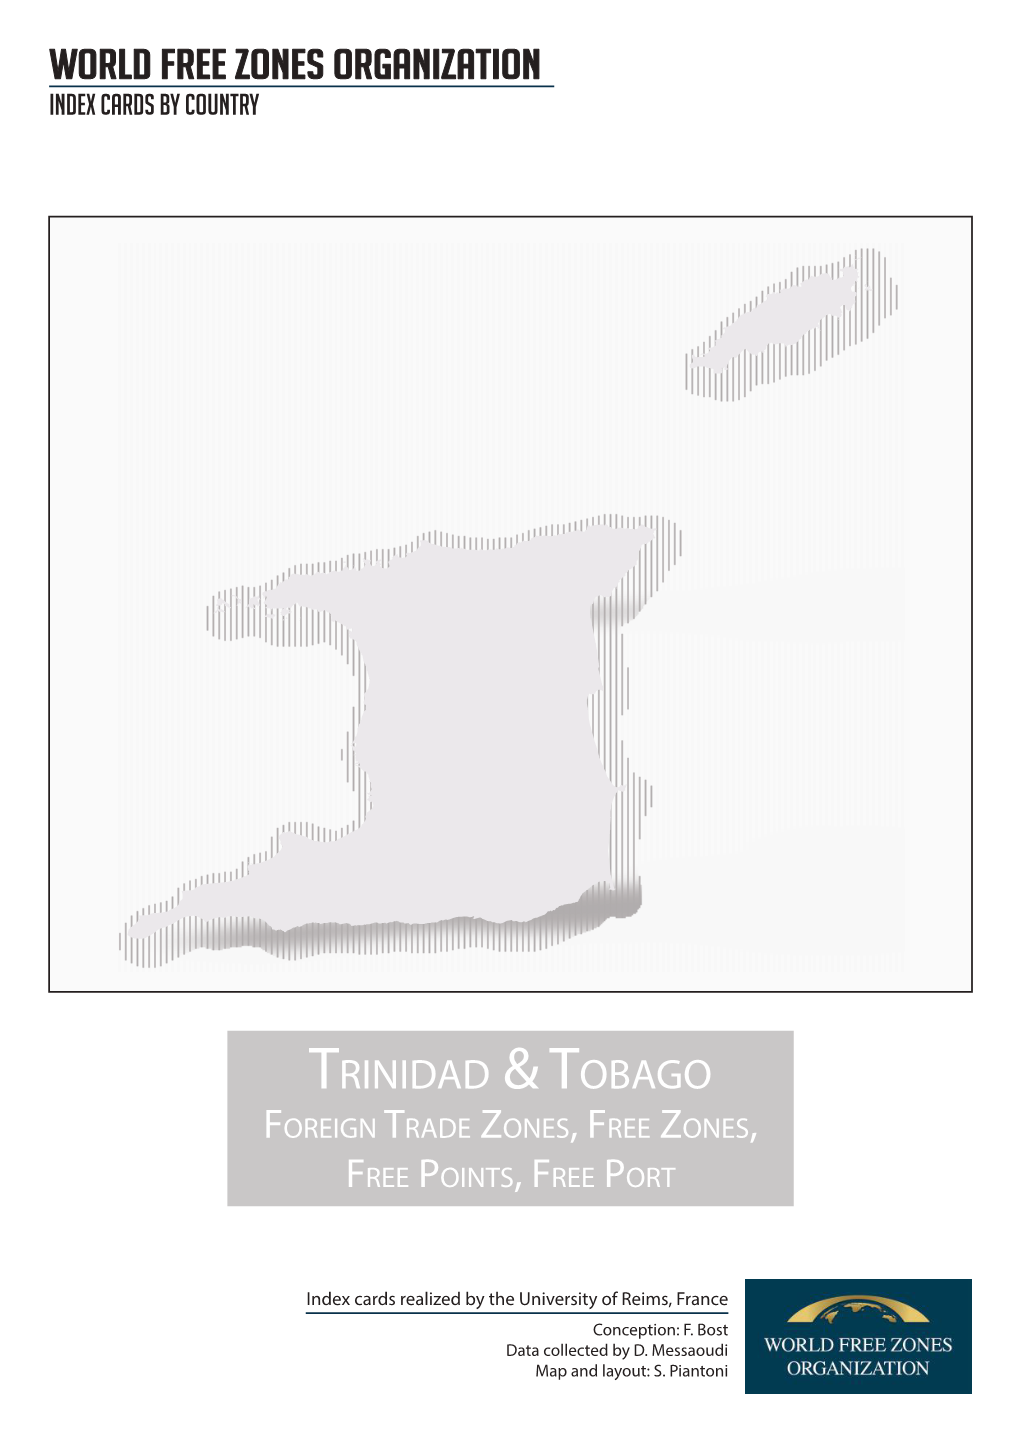 World Free Zones Organization TRINIDAD & TOBAGO